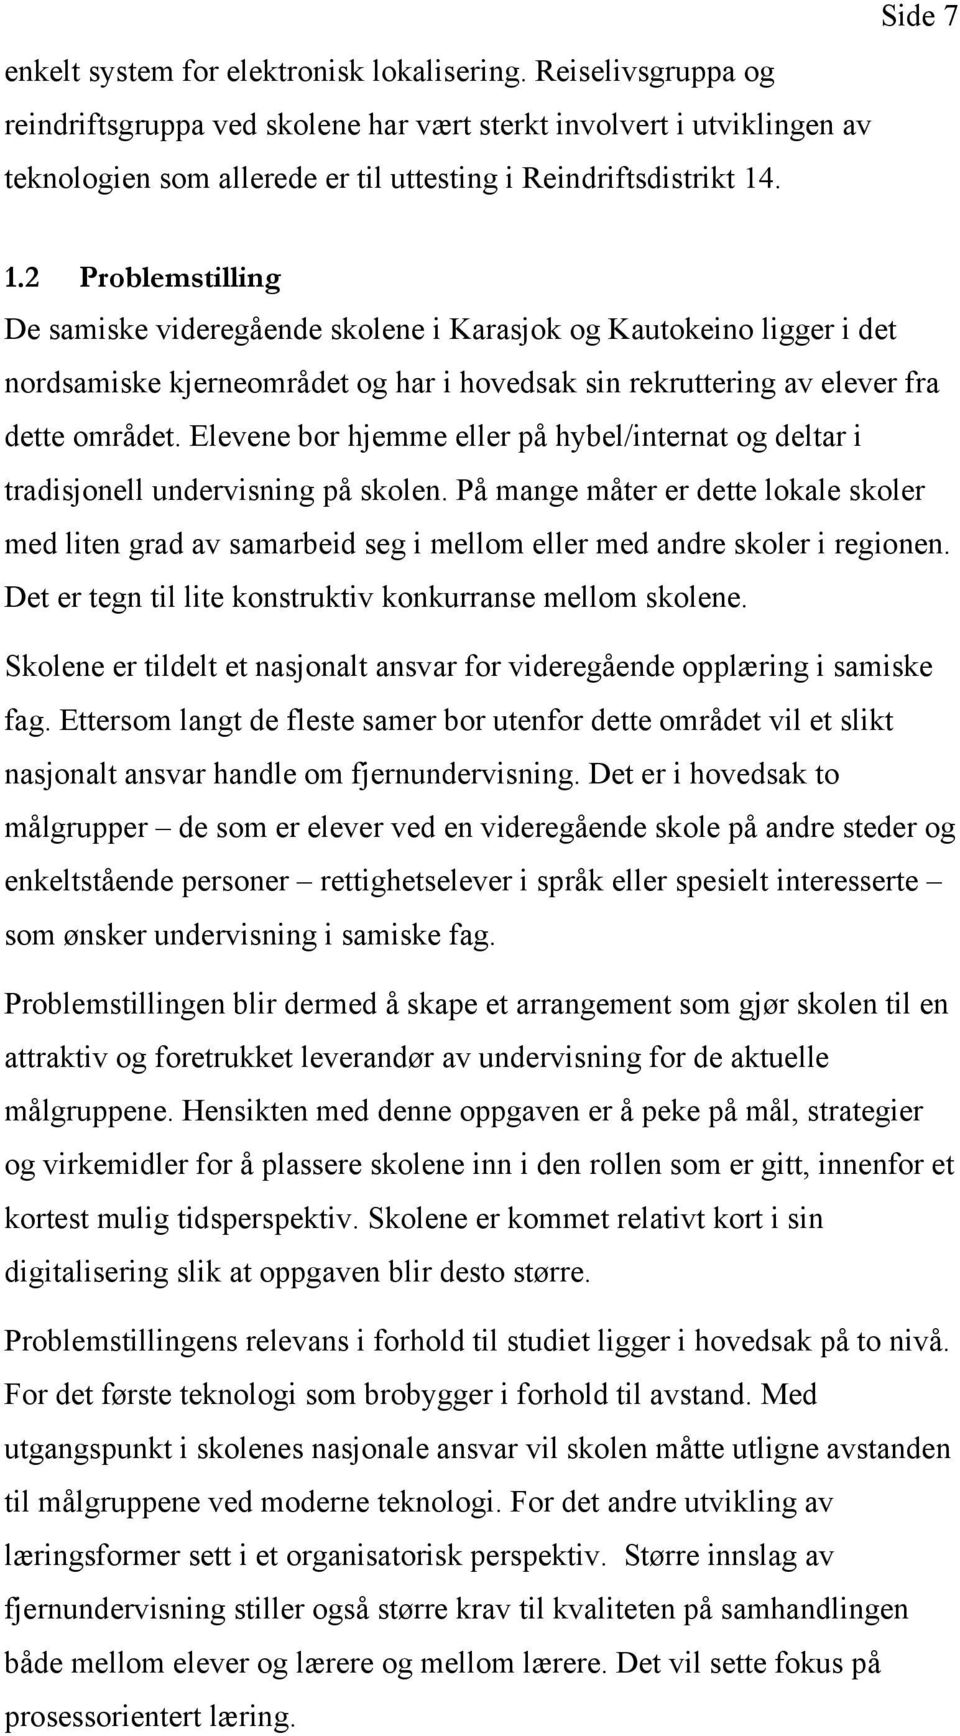 . 1.2 Problemstilling De samiske videregående skolene i Karasjok og Kautokeino ligger i det nordsamiske kjerneområdet og har i hovedsak sin rekruttering av elever fra dette området.